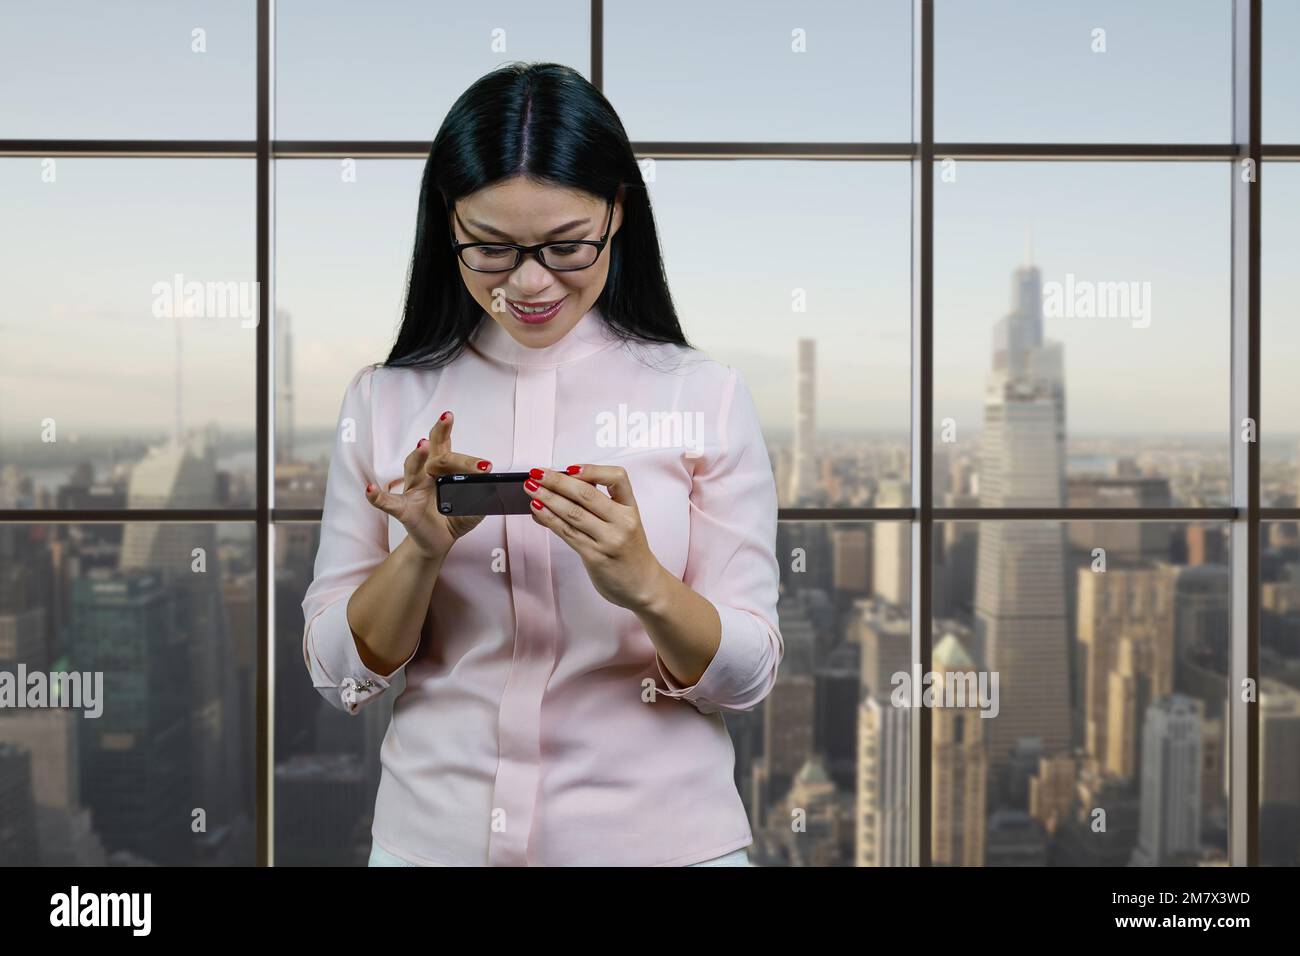 Eine junge asiatische Geschäftsfrau zoomt etwas auf ihrem Smartphone ein. Fenster mit Stadtbild-Hintergrund. Stockfoto